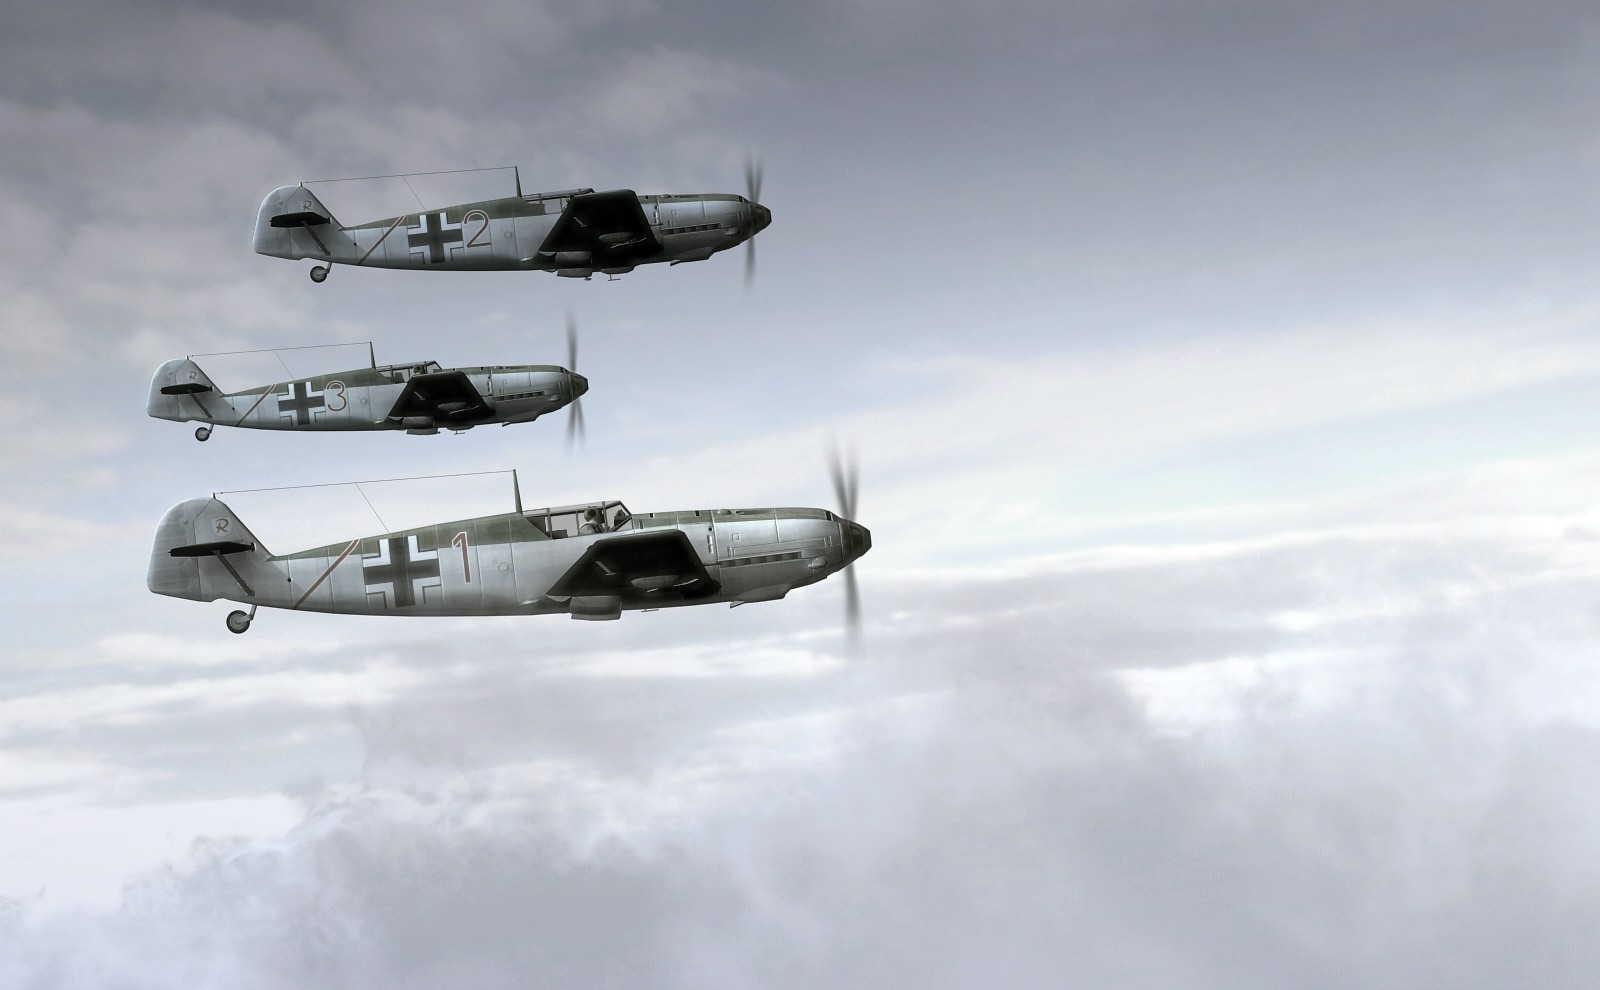 Messerschmitt, Messerschmitt Bf 109, World War II, Germany, Military